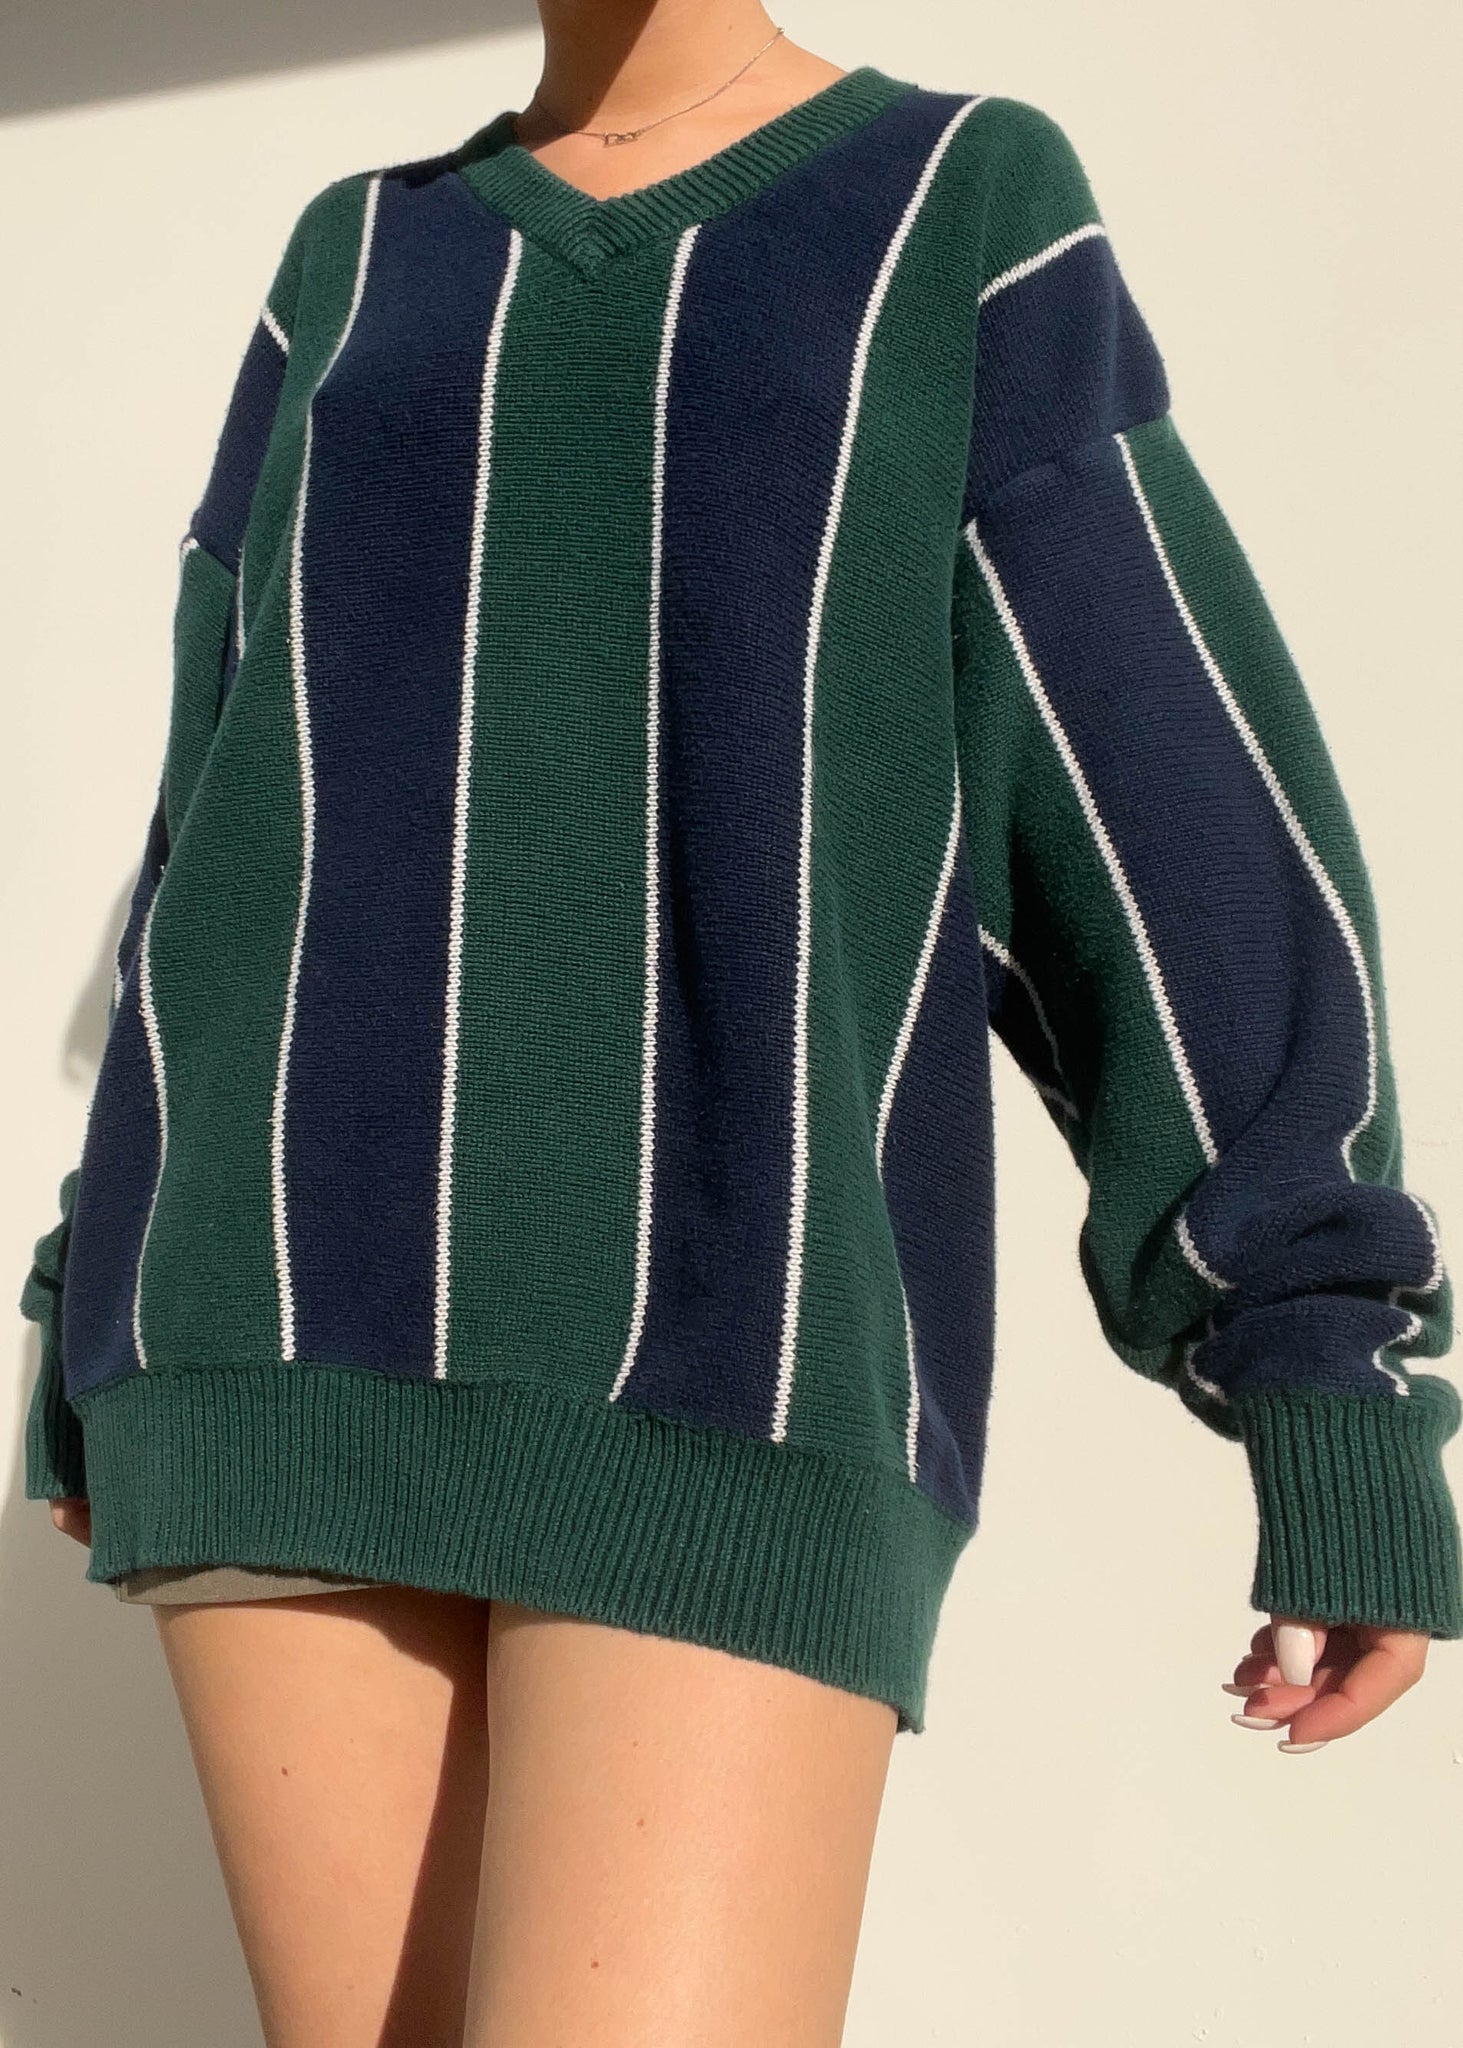 90's Vertical Striped Sweater (L)